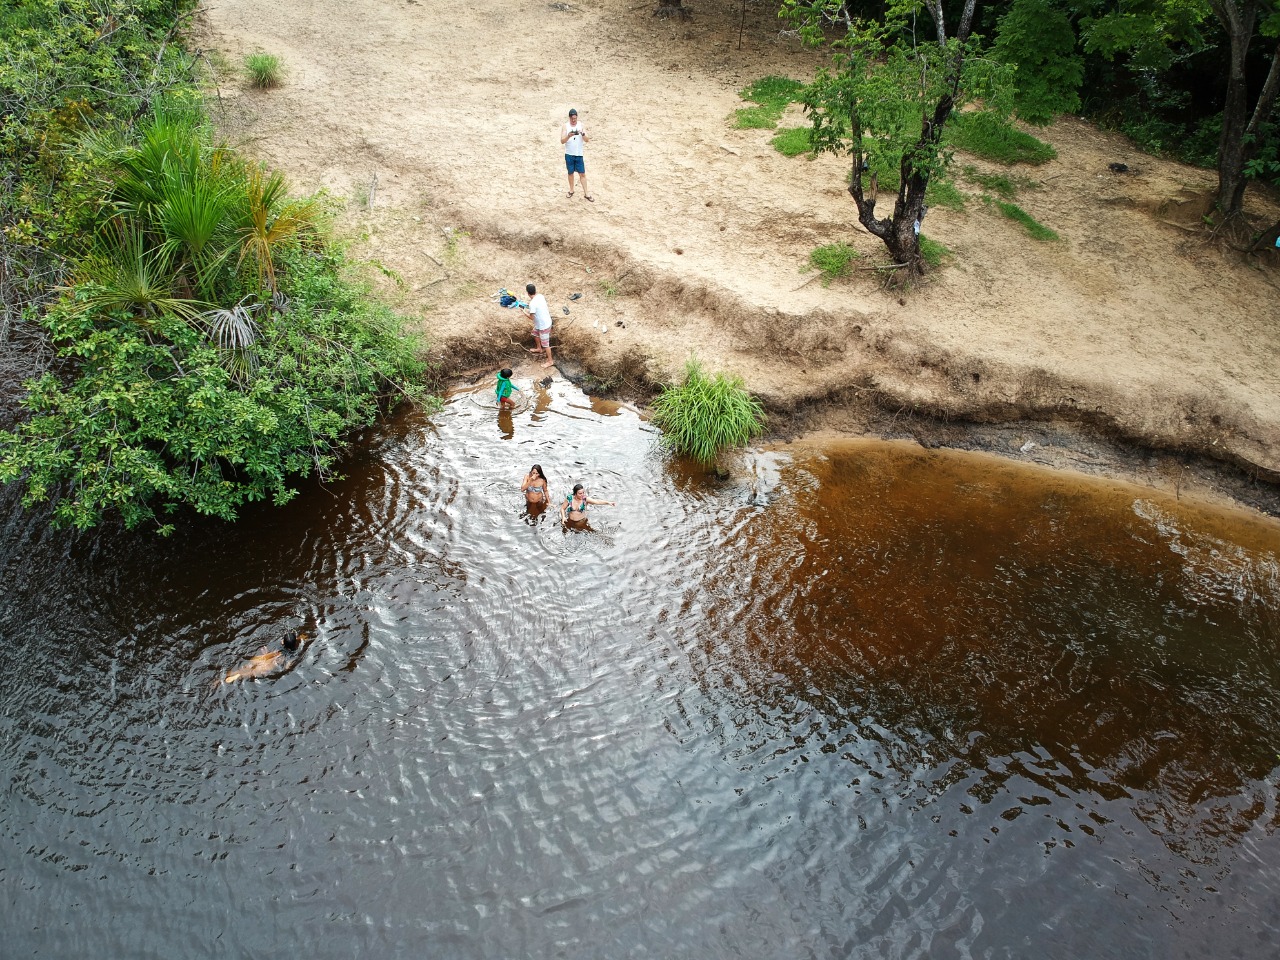 Sítio do Rio Grande visto pelas lentes de um drone